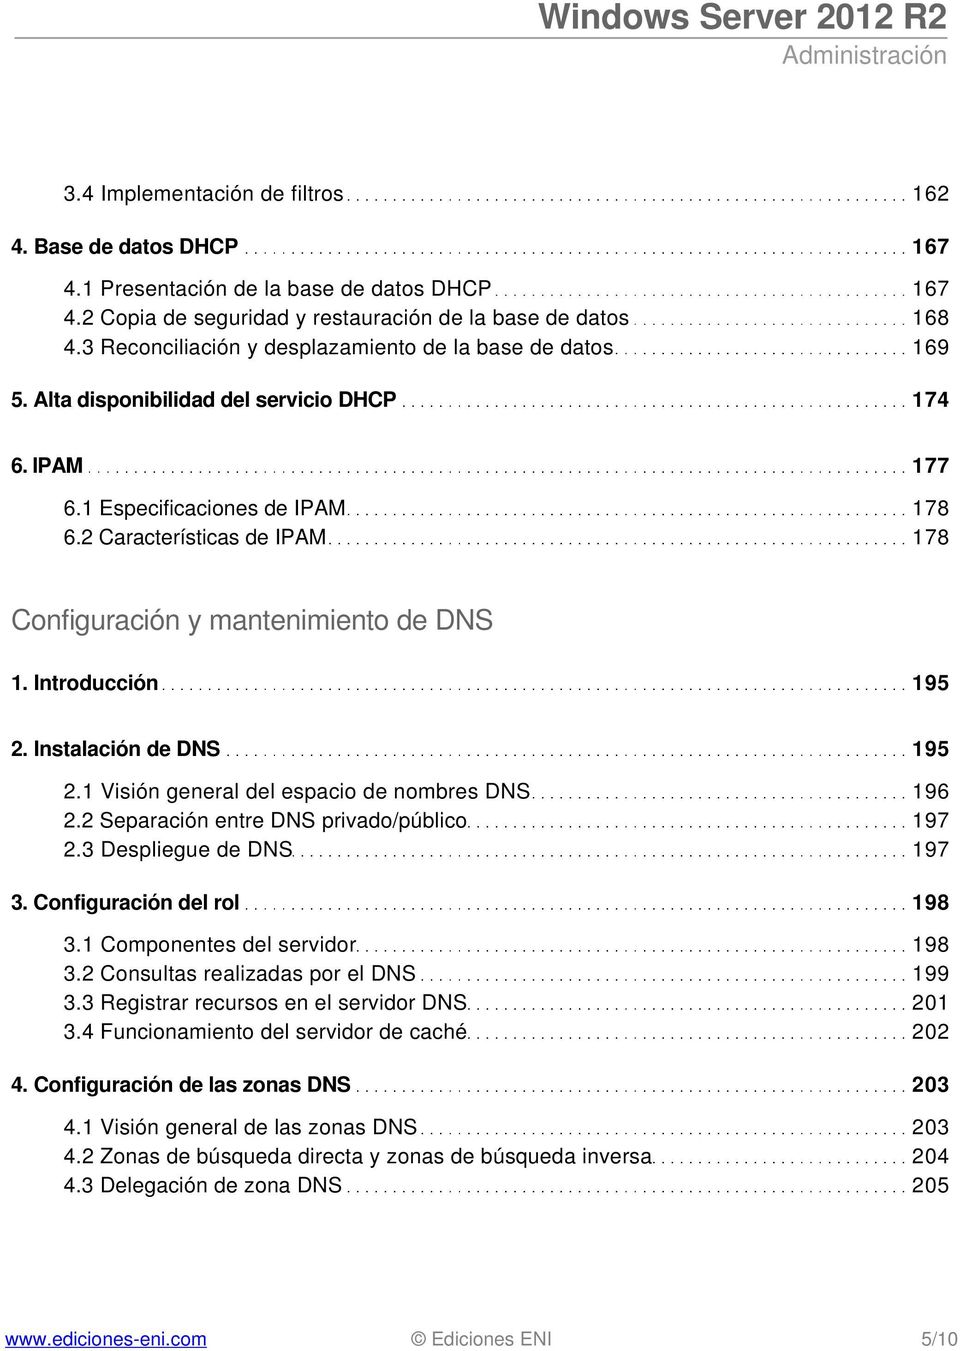 2 Características de IPAM 178 Configuración y mantenimiento de DNS 1. Introducción 195 2. Instalación de DNS 195 2.1 Visión general del espacio de nombres DNS 196 2.